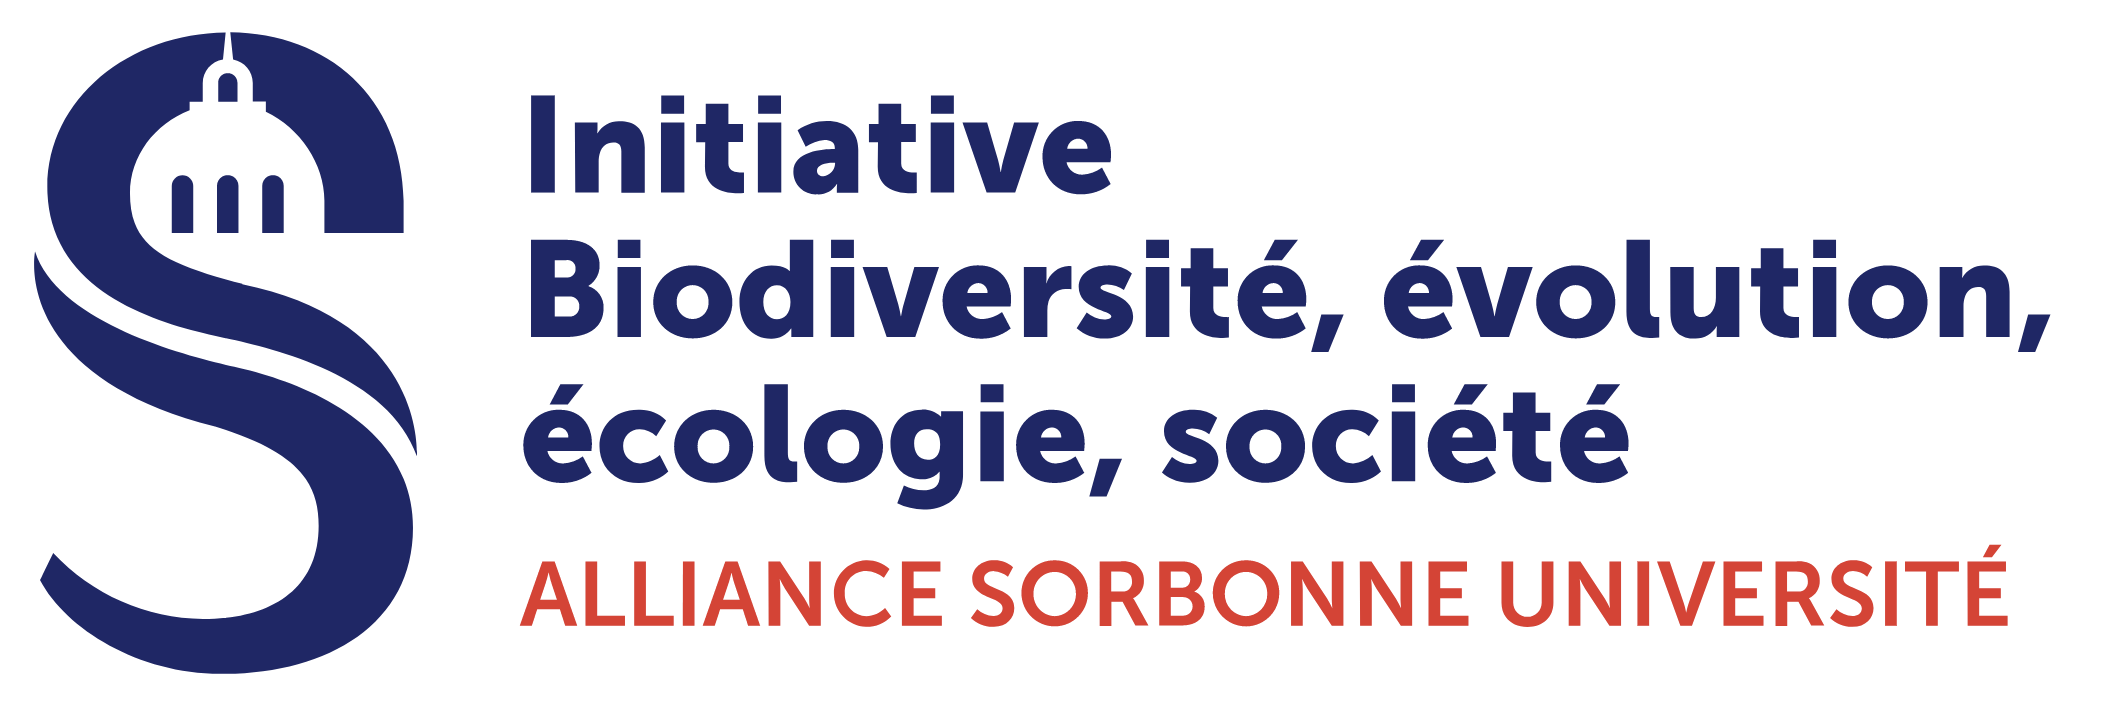 Initiative Biodiversité, évolution, écologie, société. Alliance Sorbonne Université